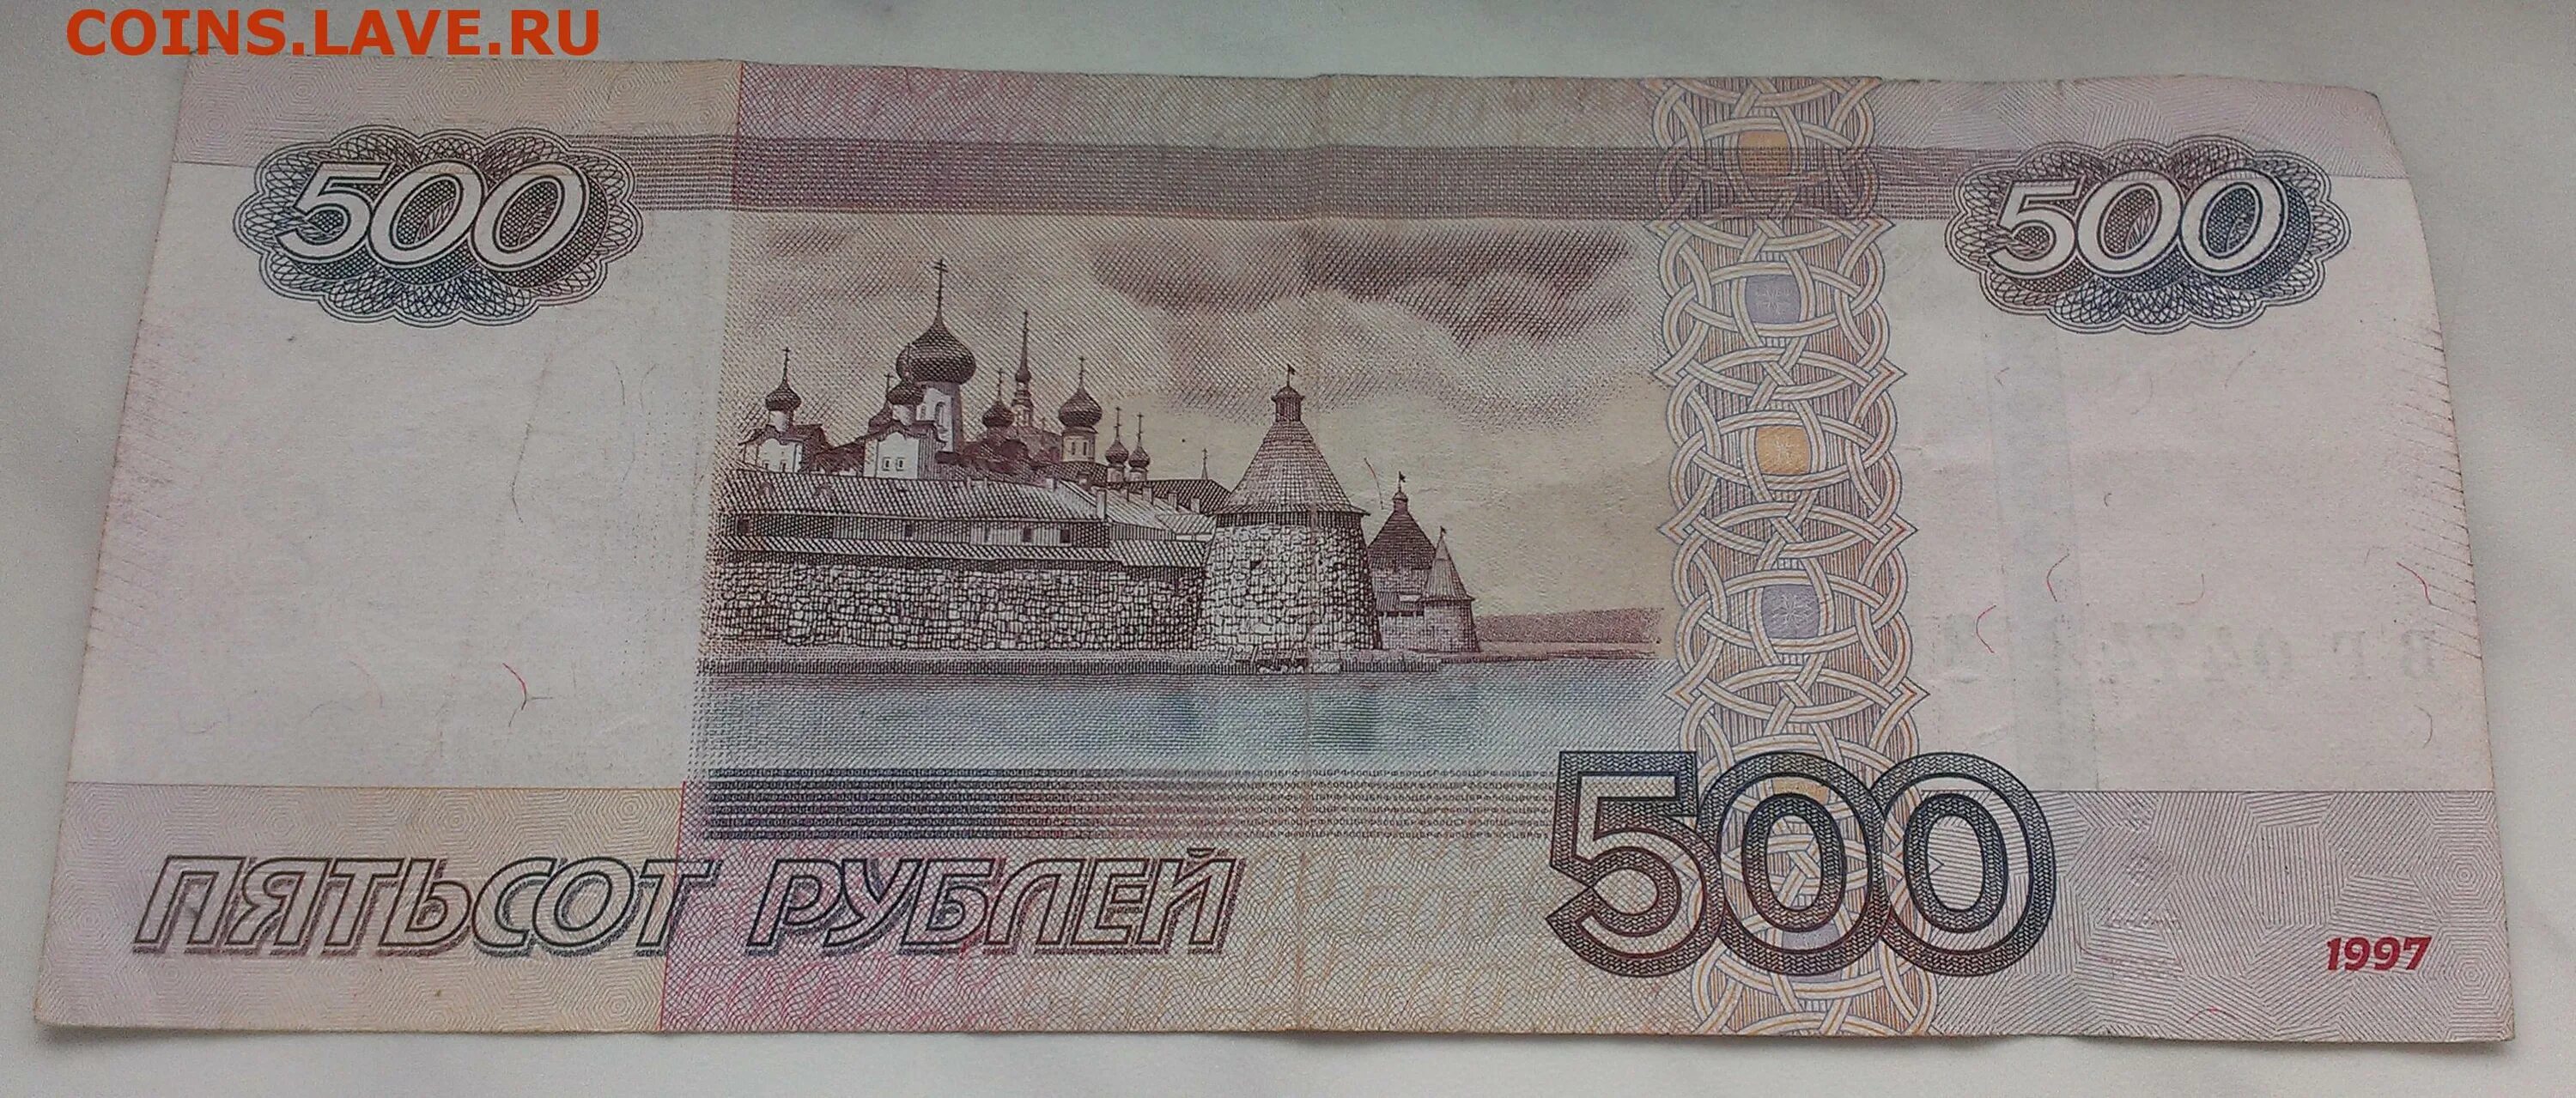 500 рублей номер. 500 Рублей с красивым номером. 500 Рублей с корабликом. 500 Рублей купюра для печати. 500 Рублей 2010.